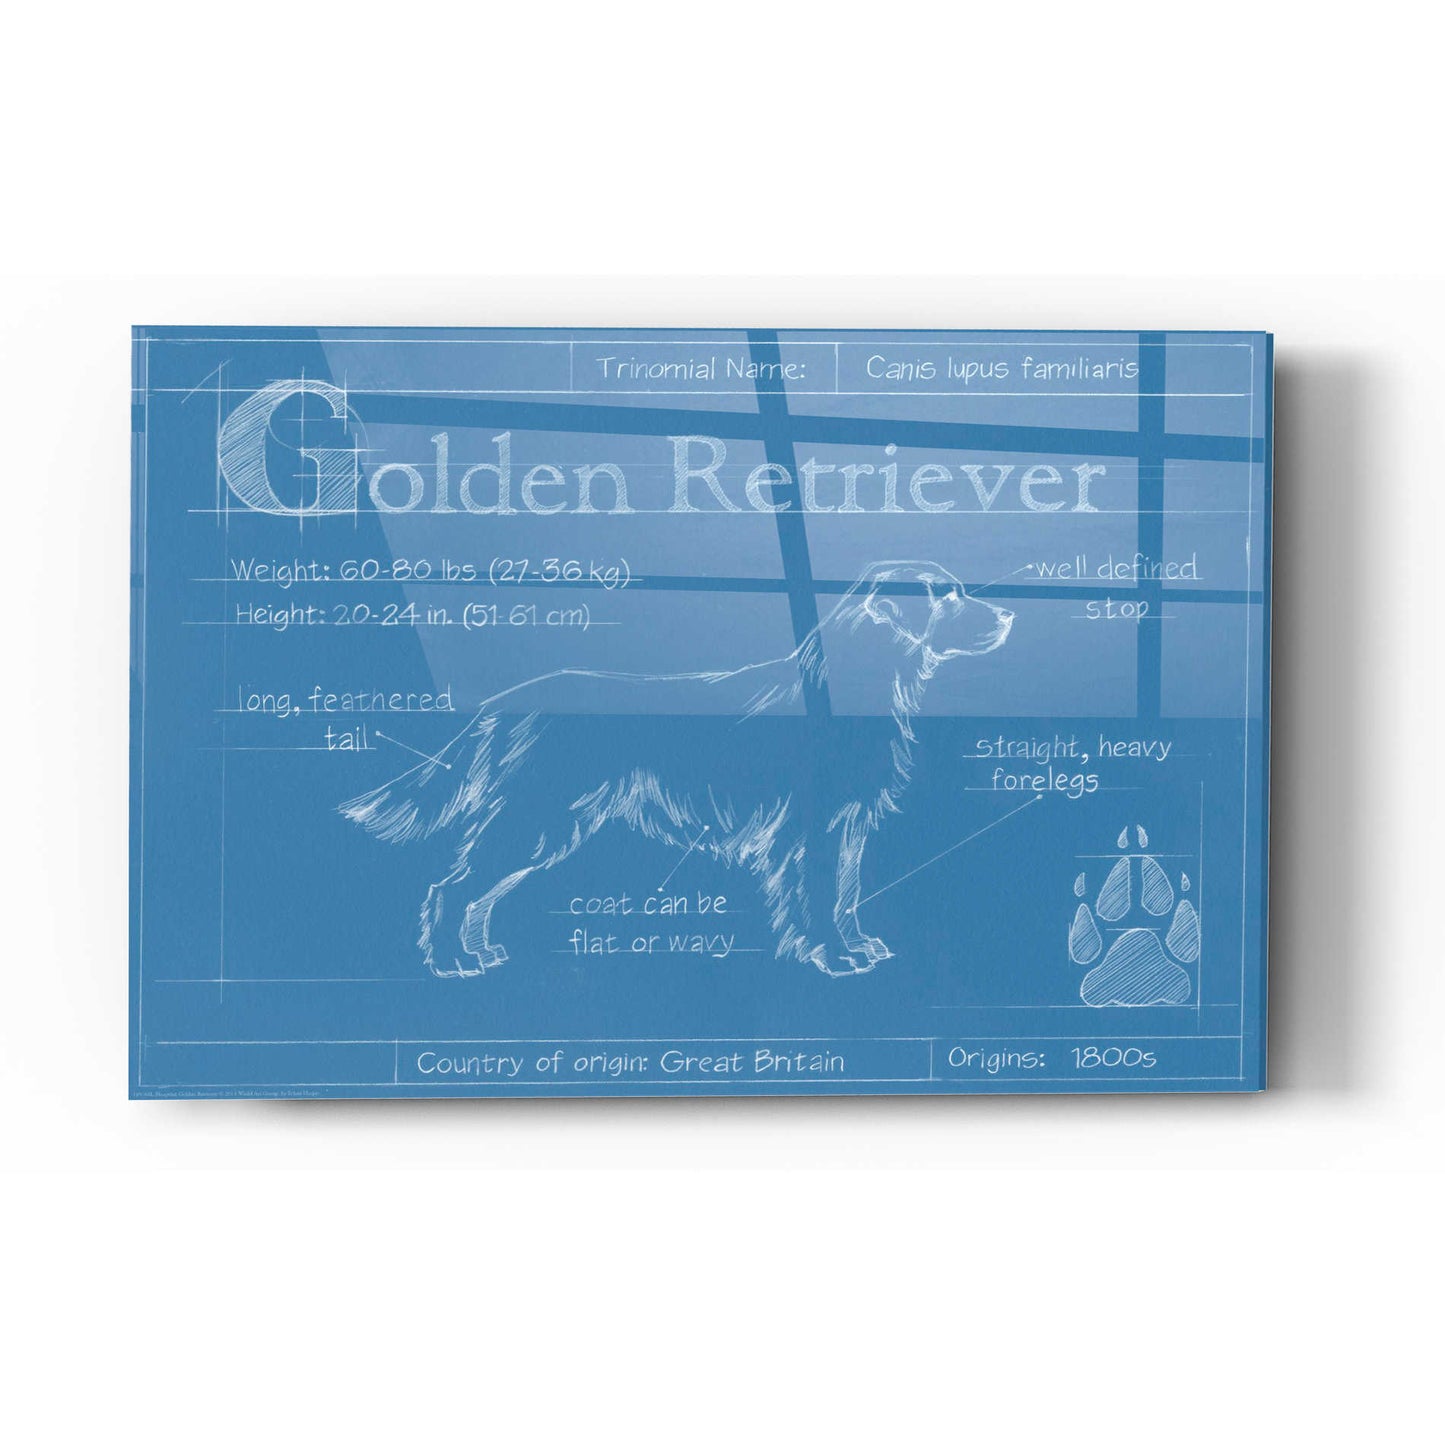 Epic Art 'Blueprint Golden Retriever' by Ethan Harper Acrylic Glass Wall Art,24x36